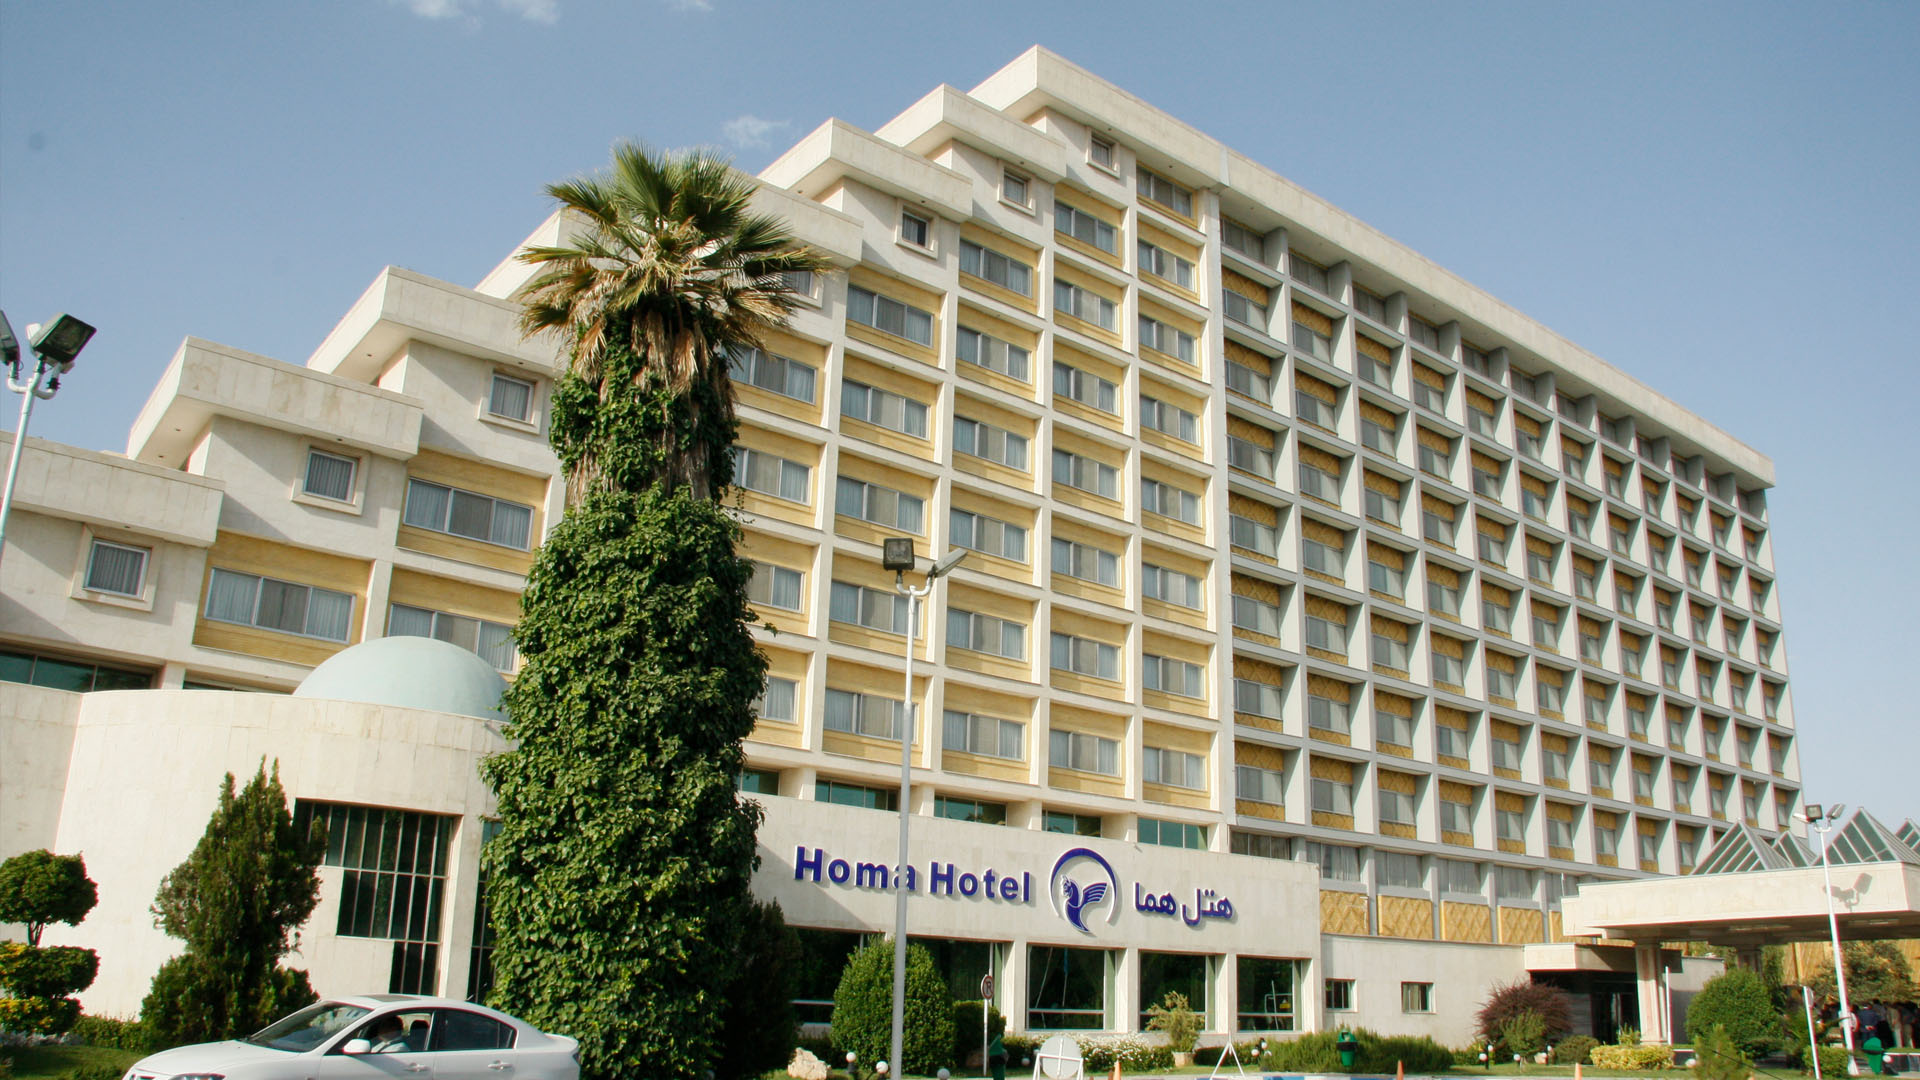 Homa Hotel